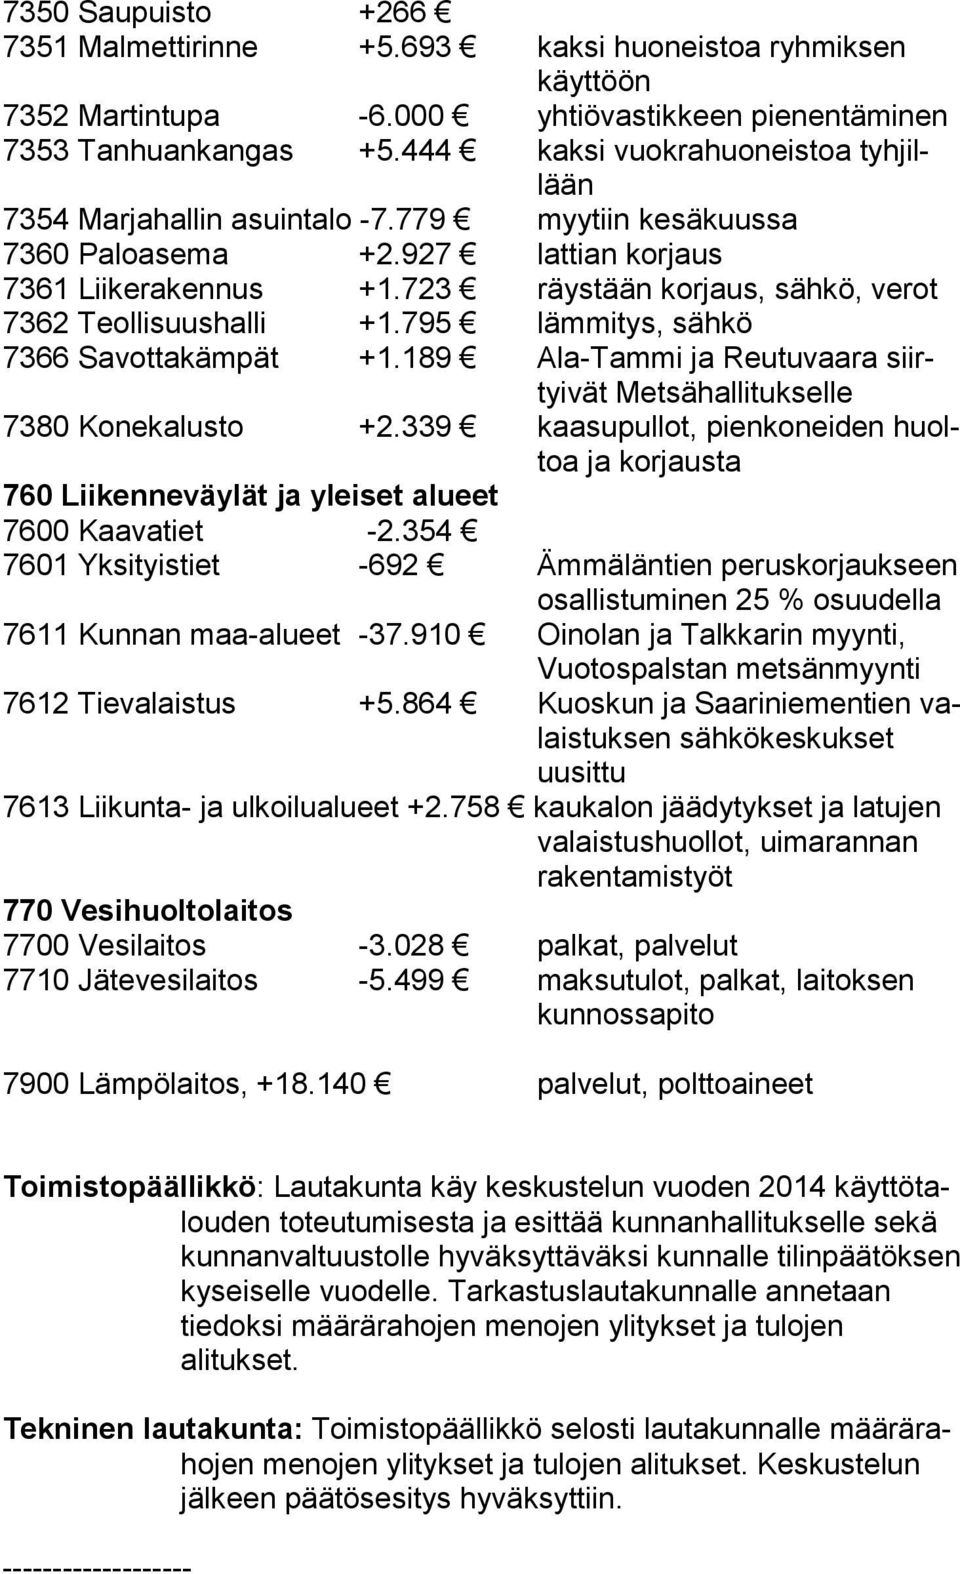 723 räystään korjaus, sähkö, verot 7362 Teollisuushalli +1.795 lämmitys, sähkö 7366 Savottakämpät +1.189 Ala-Tammi ja Reutuvaara siirtyivät Metsähallitukselle 7380 Konekalusto +2.